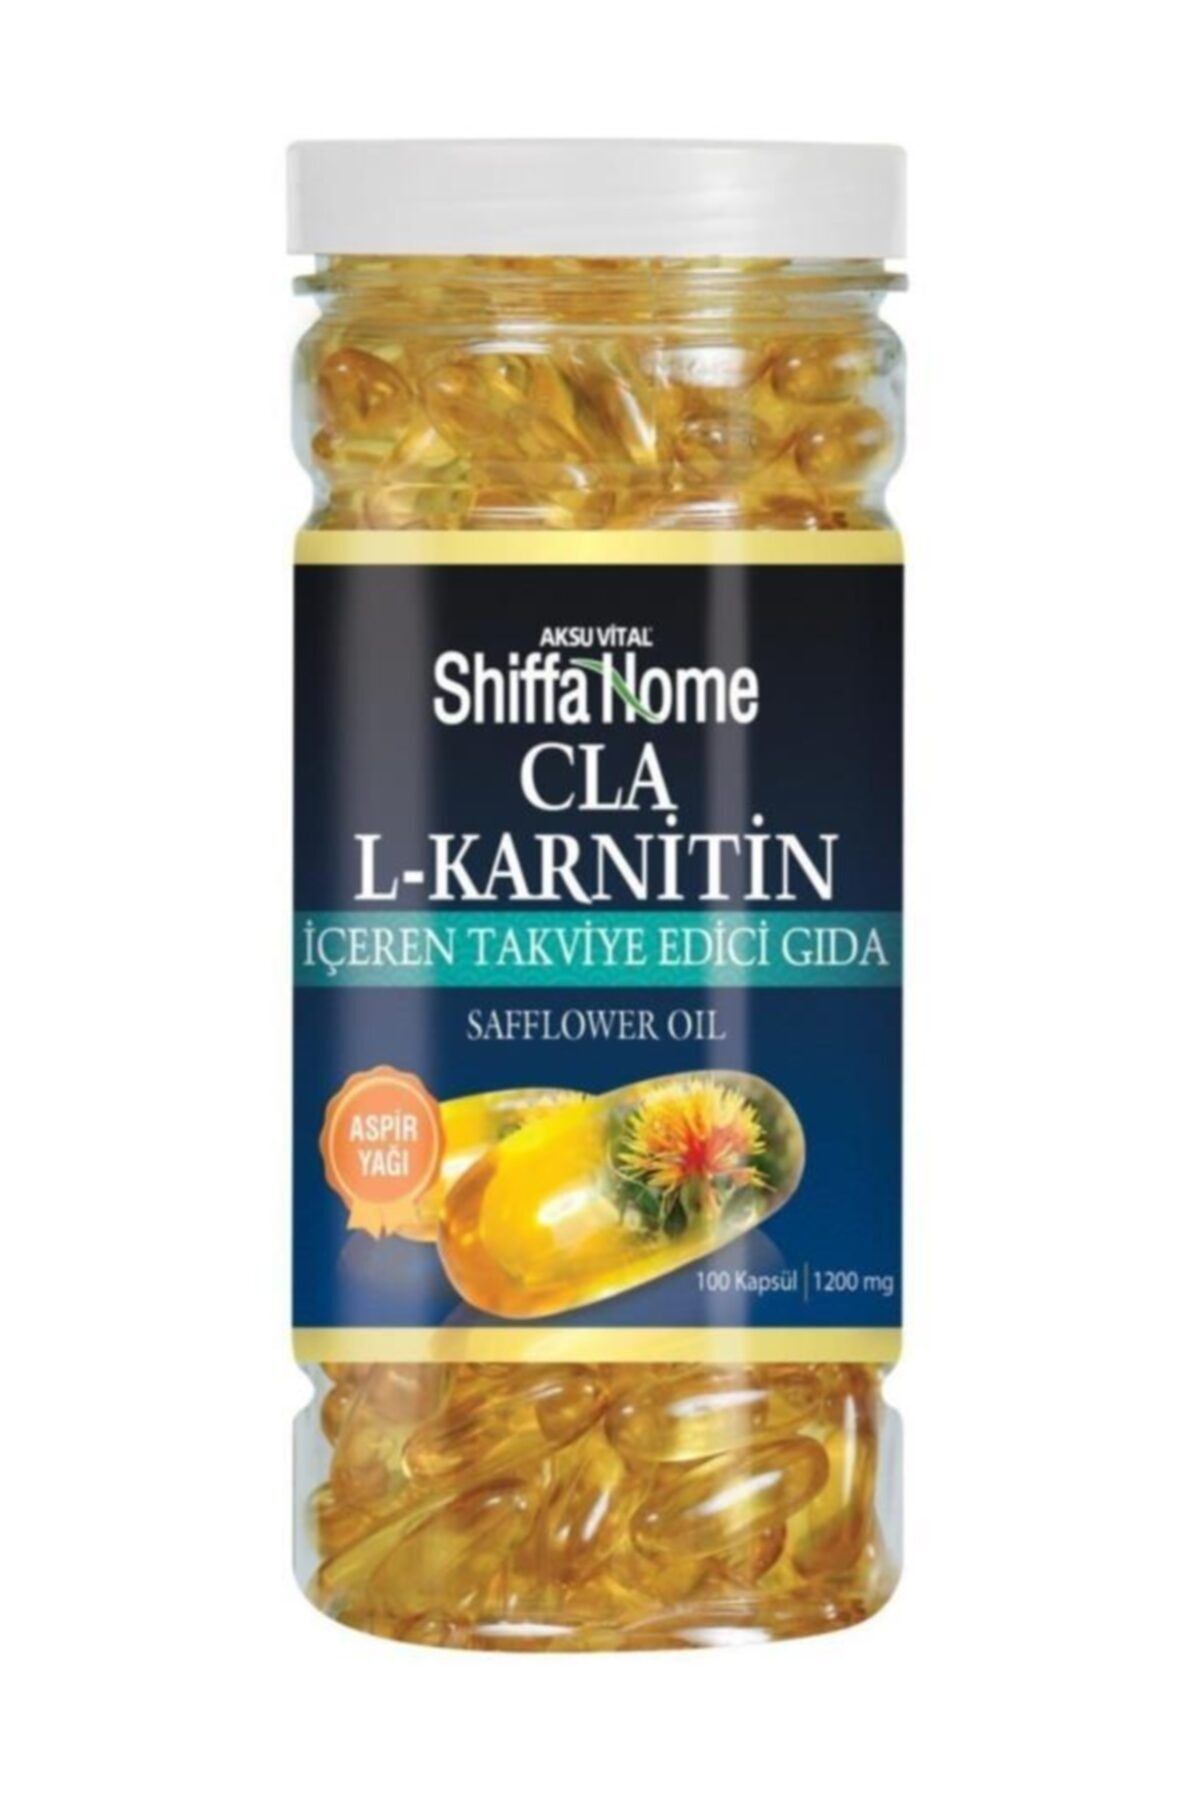 Shiffa Home L-karnitin Cla Aspir Yağı 100 Kapsül